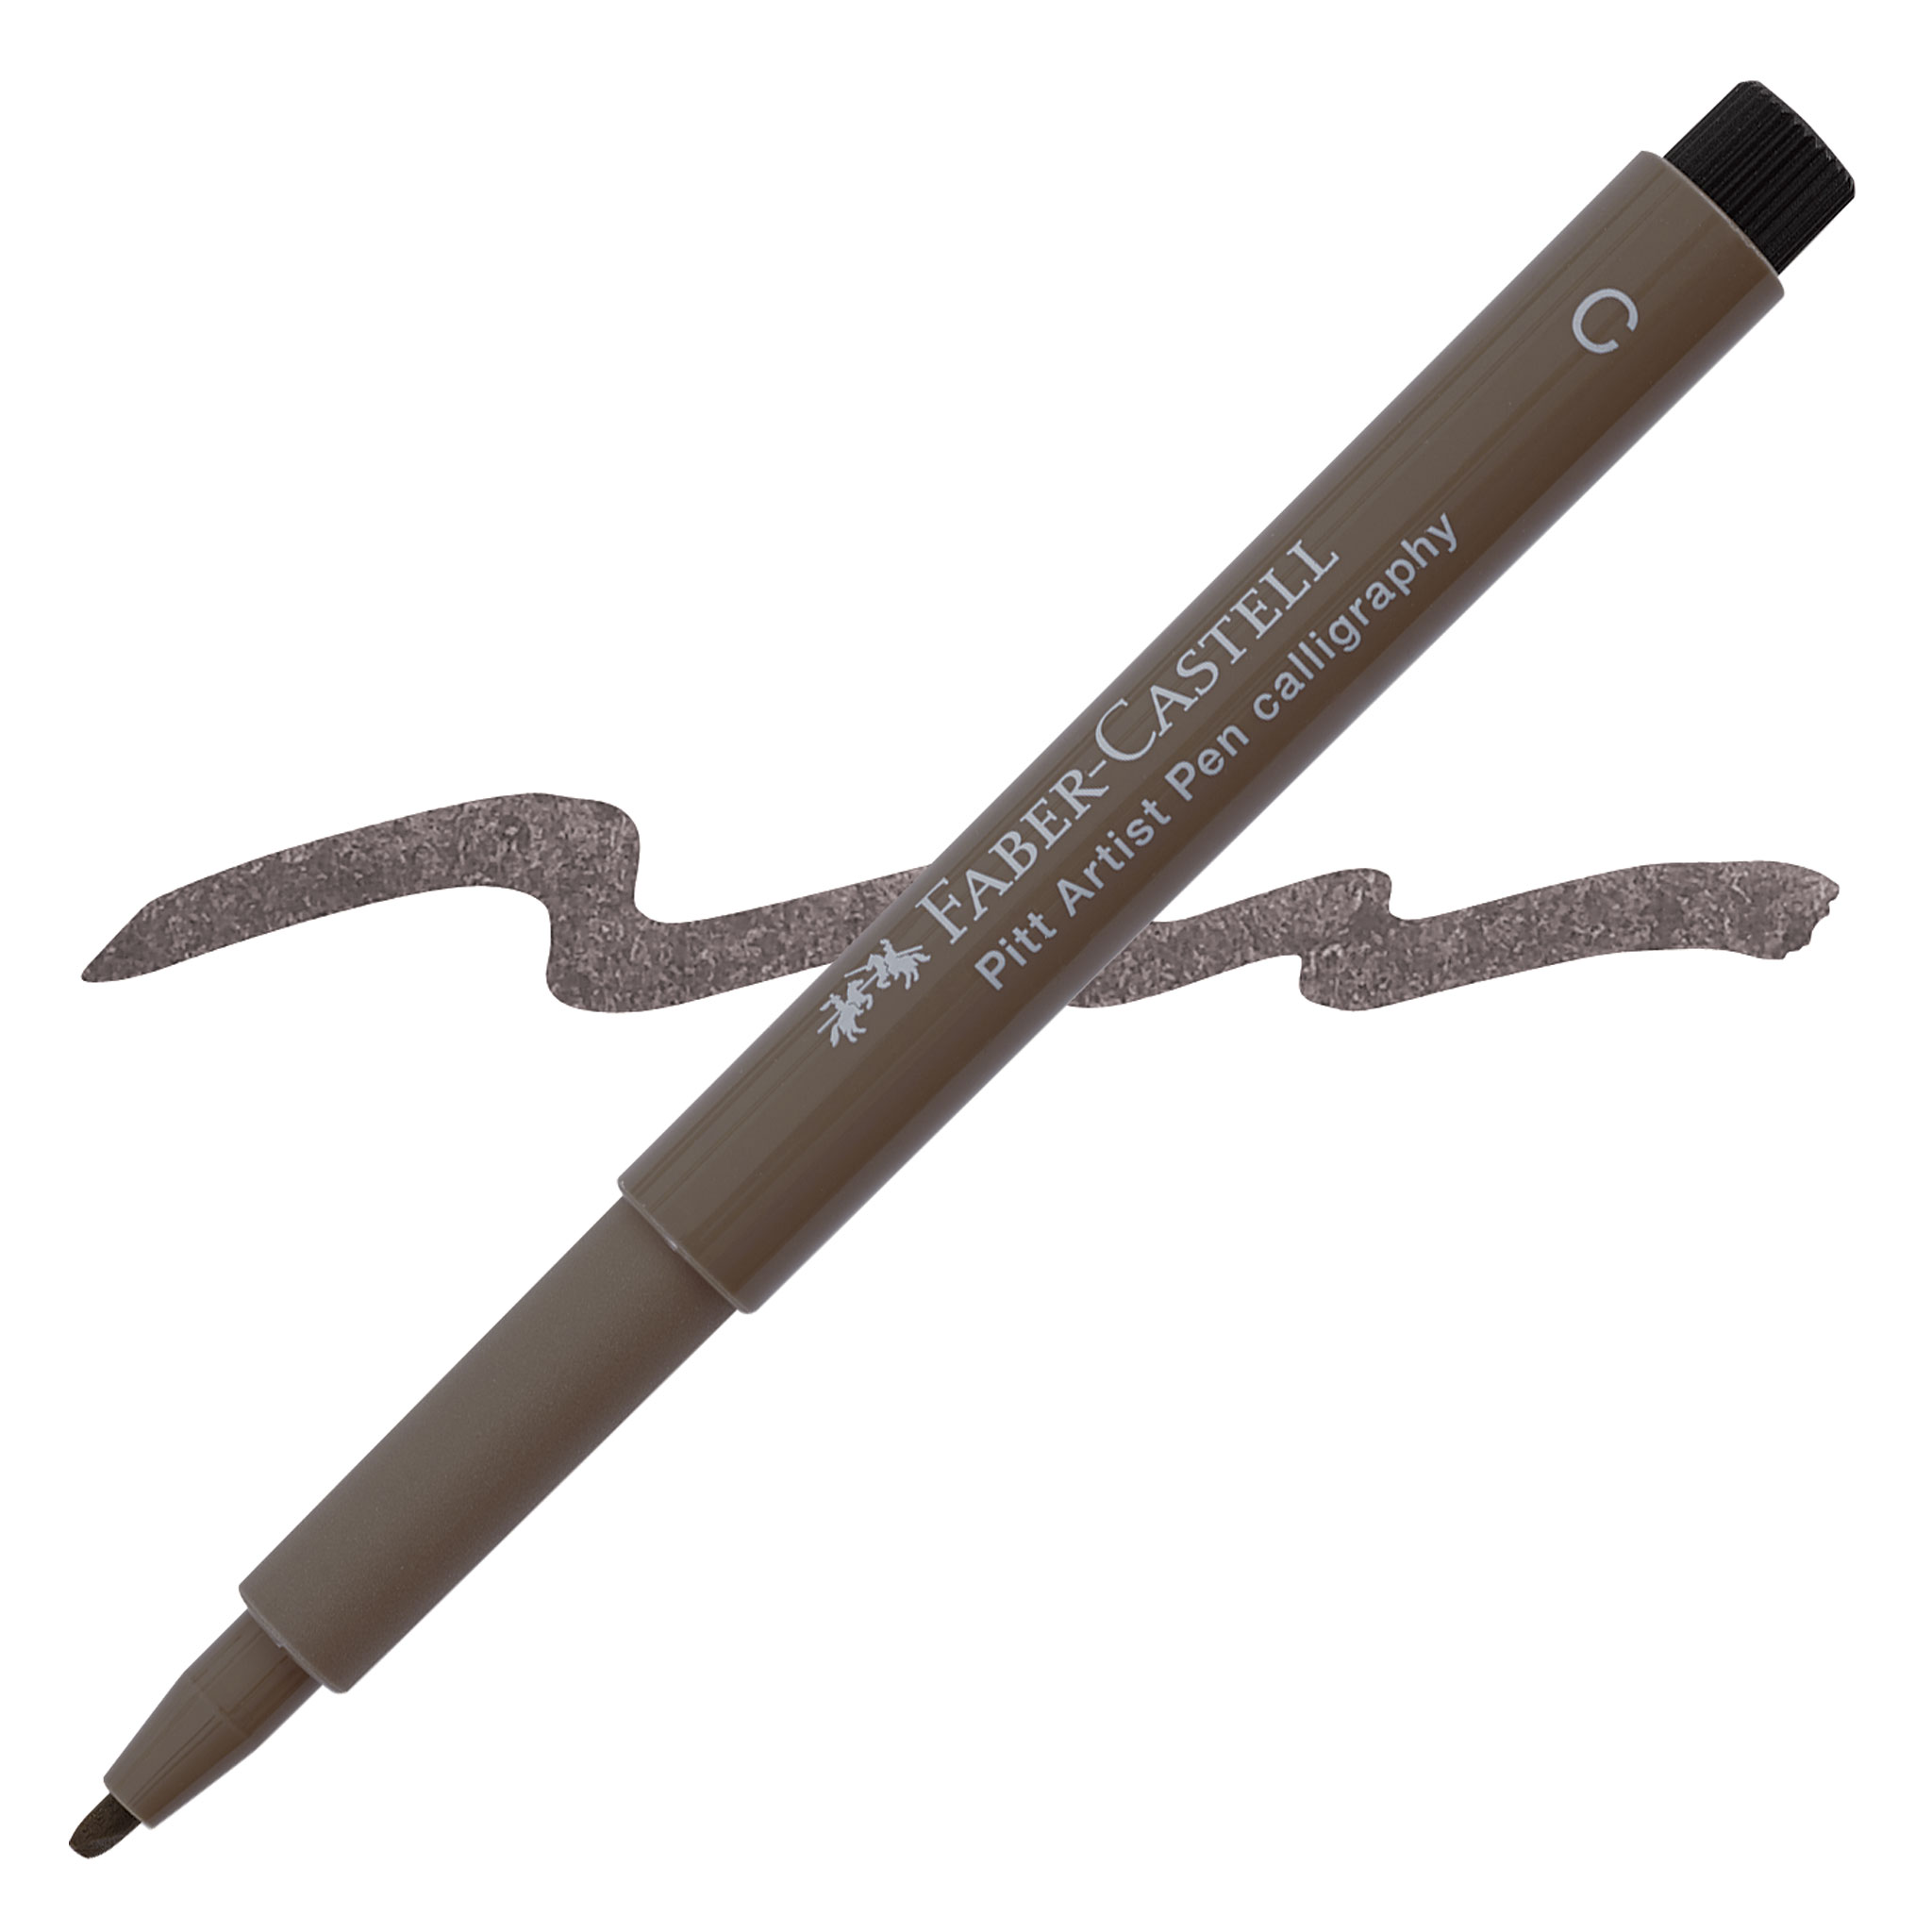 Faber-Castell Pitt Artist Pen Calligraphy 2.5mm Warm Grey III